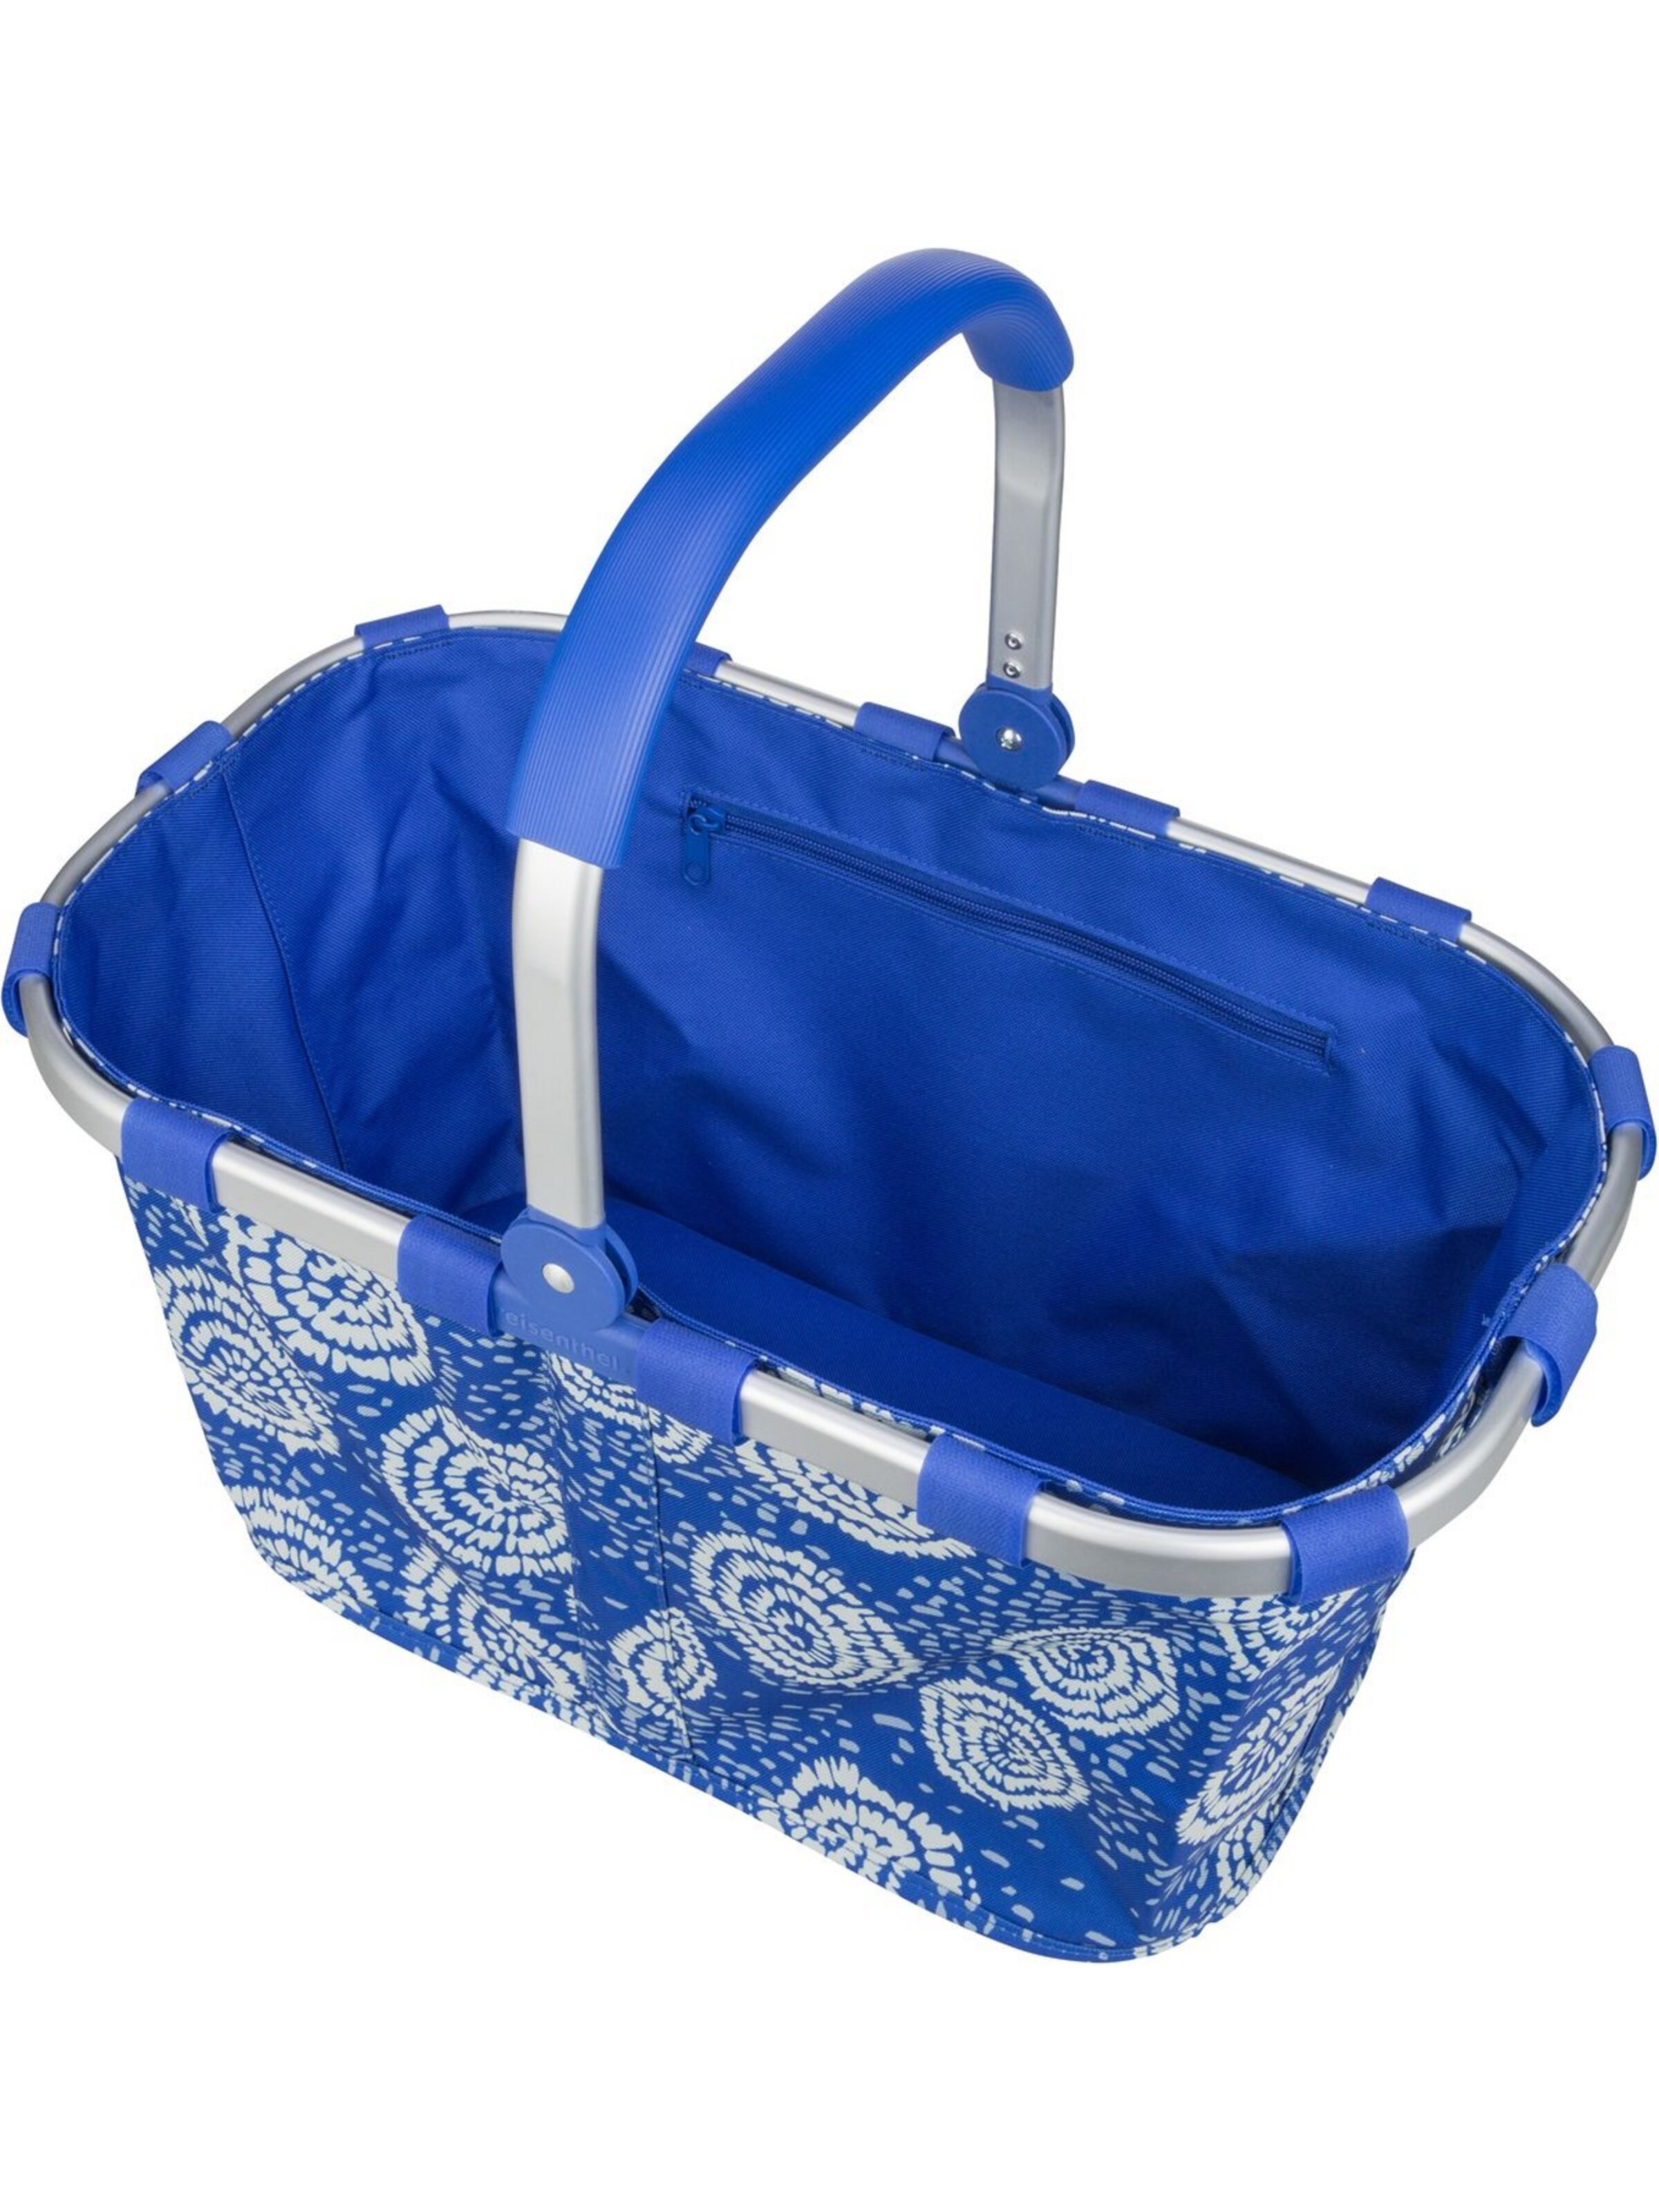 Sacs et sacs à dos Poche ventrale carrybag REISENTHEL en Bleu 